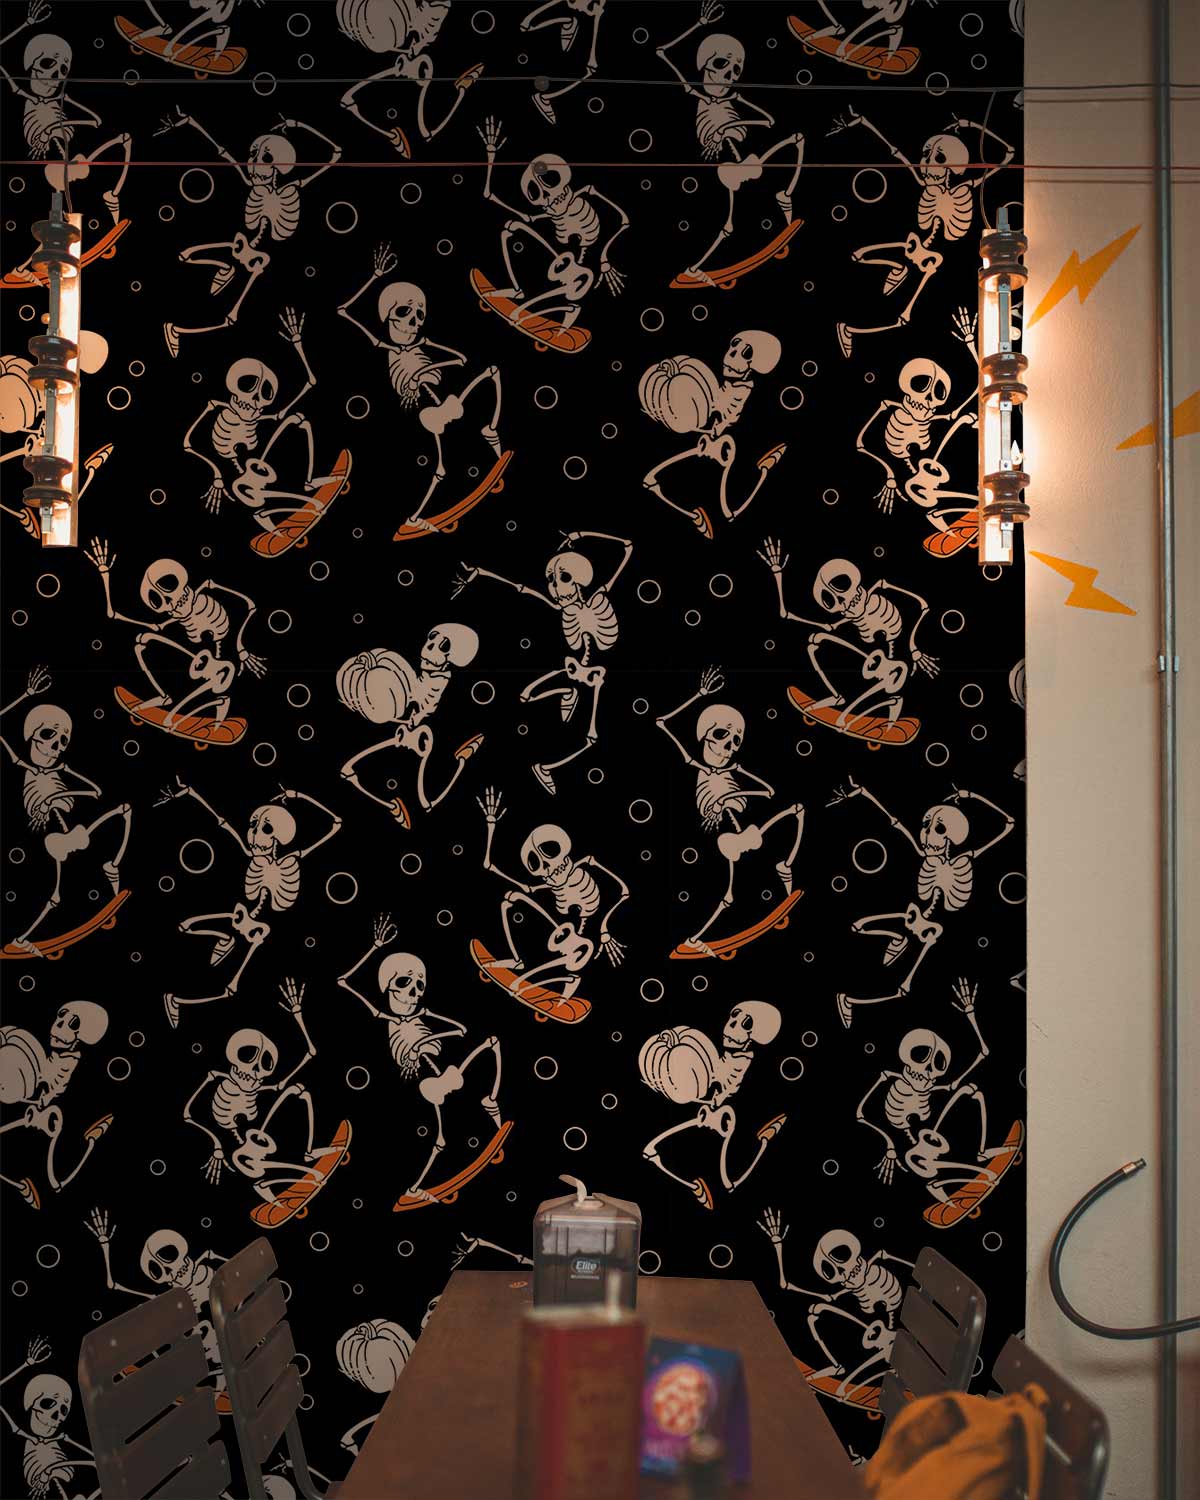 Dancing Skeleton Cool Custom Wallpaper for Walls